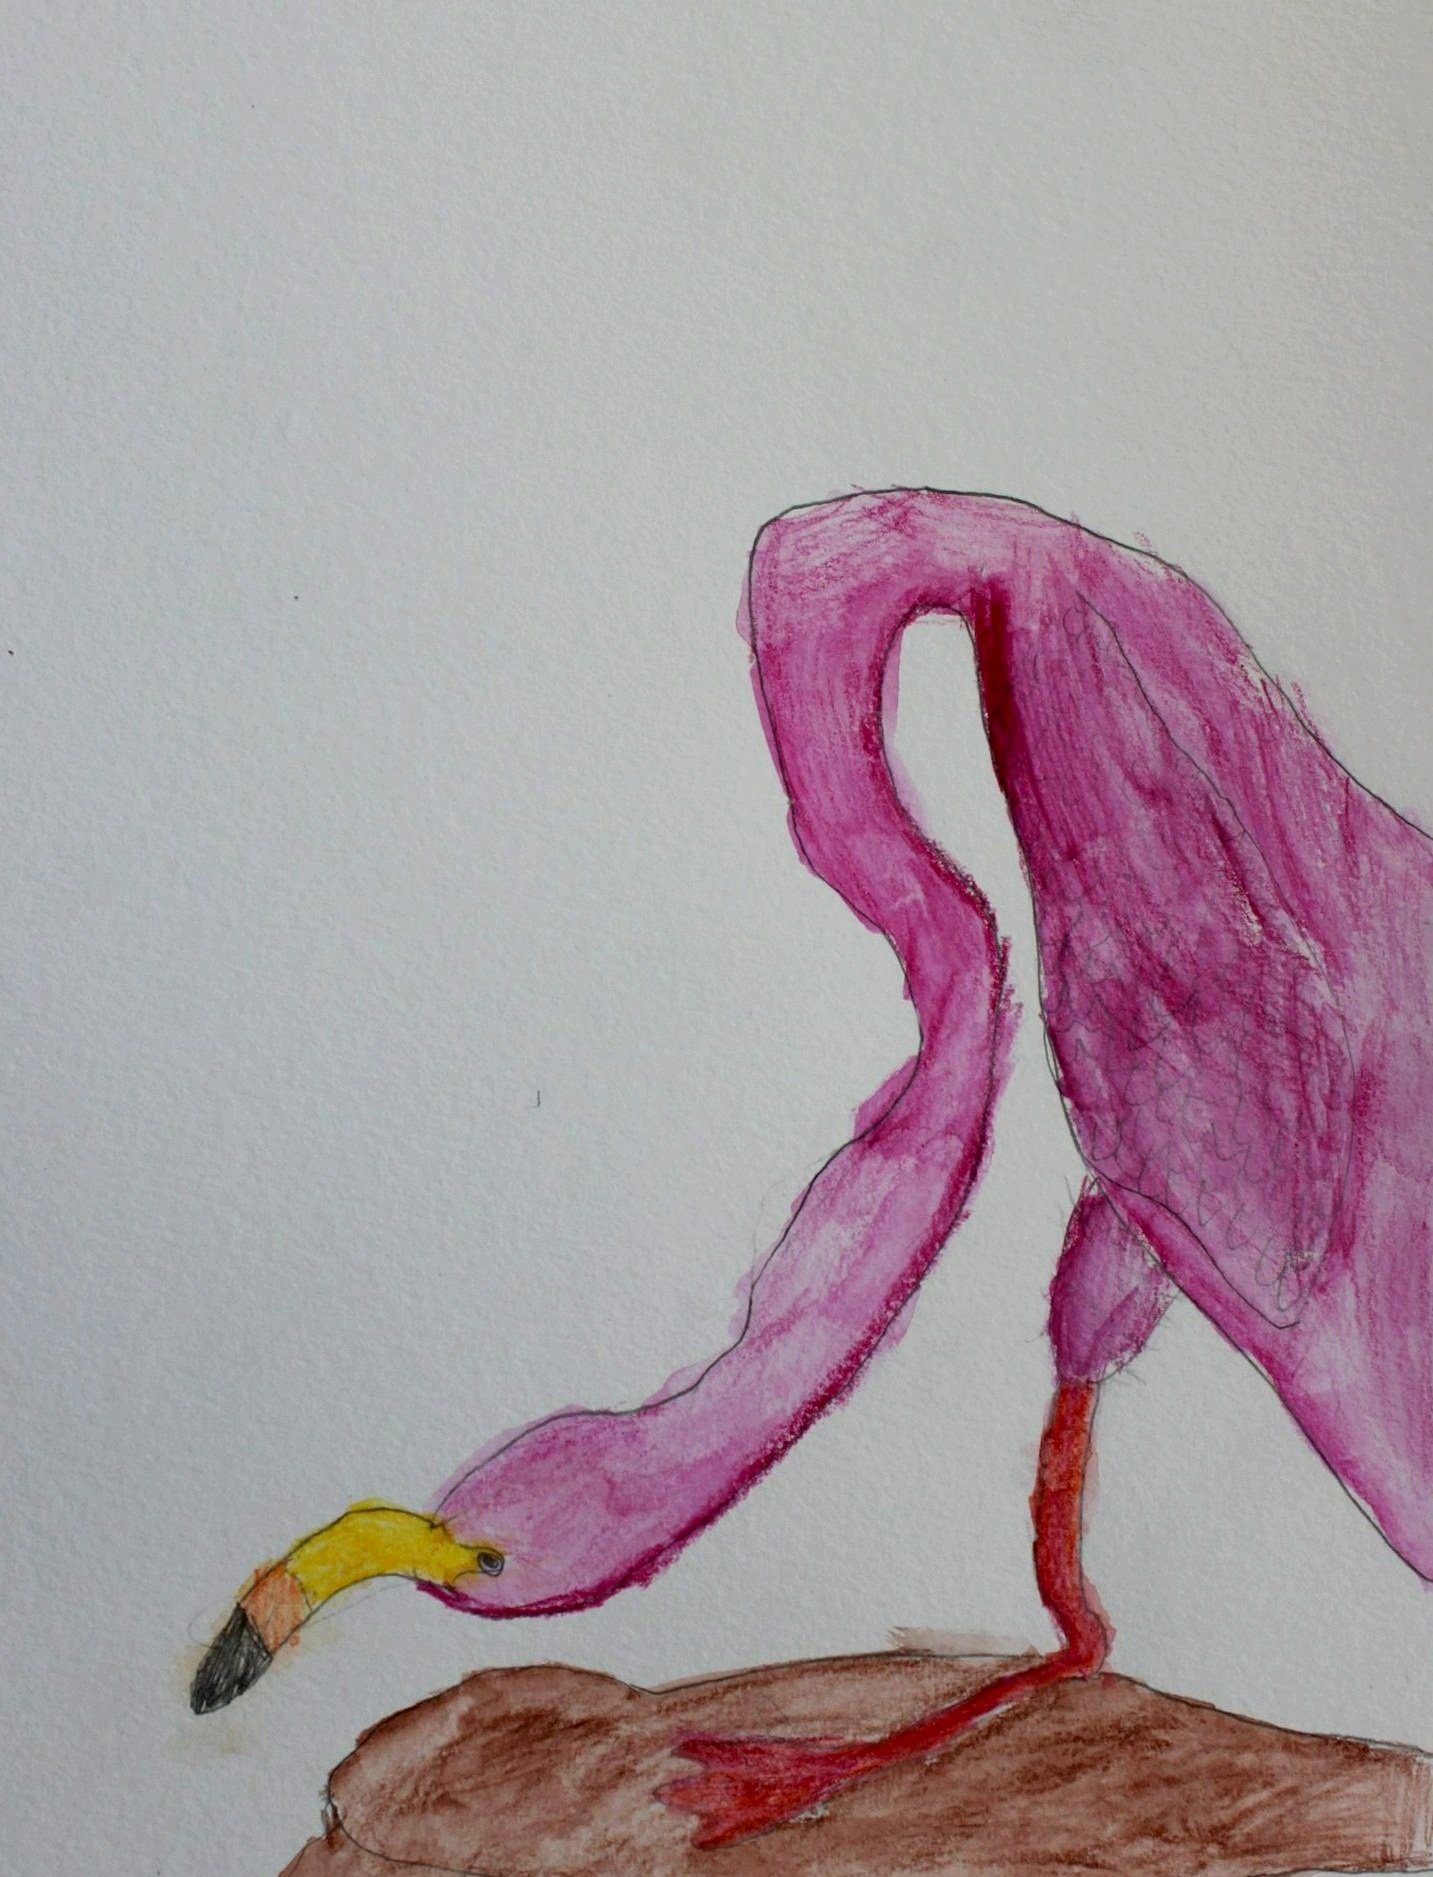 L.R., age 7, watercolor pencil